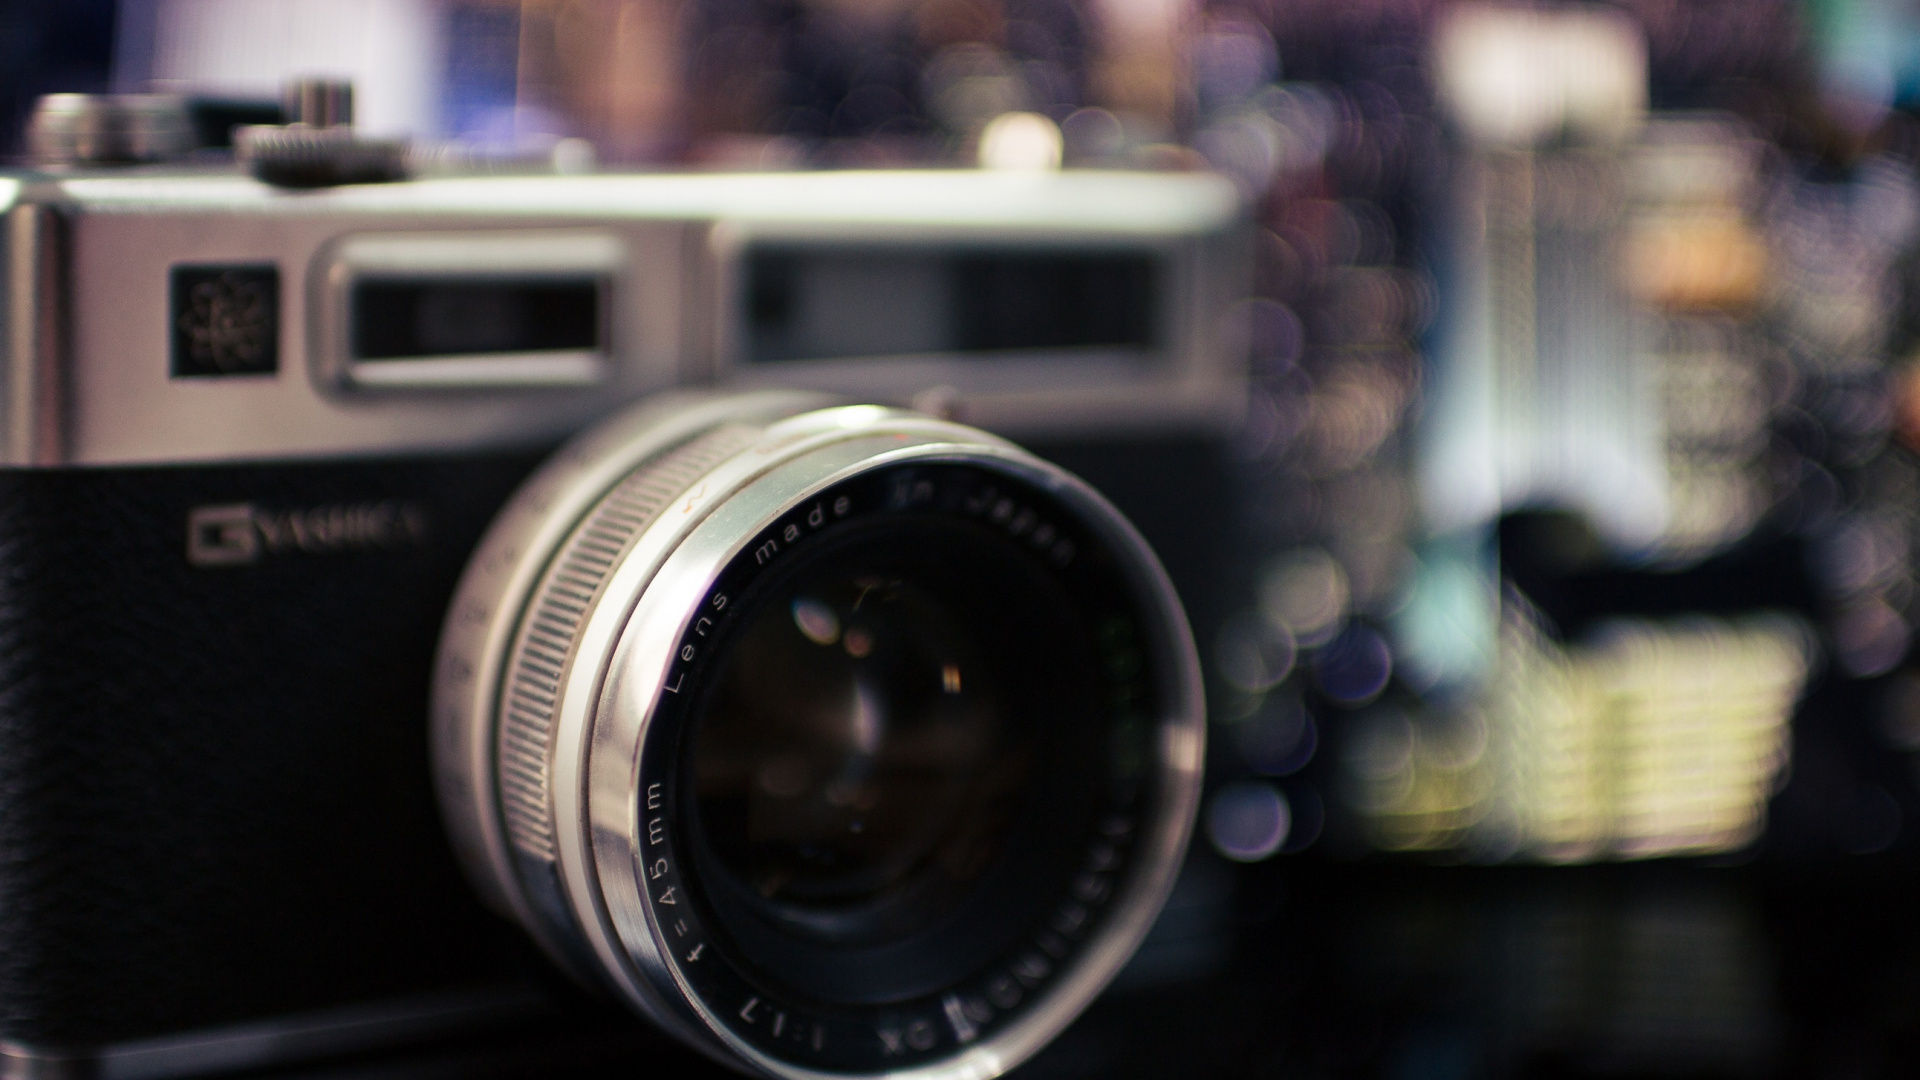 摄像机镜头, 拍摄像头, 光学照相机, 摄像机的附件, 镜头 壁纸 1920x1080 允许